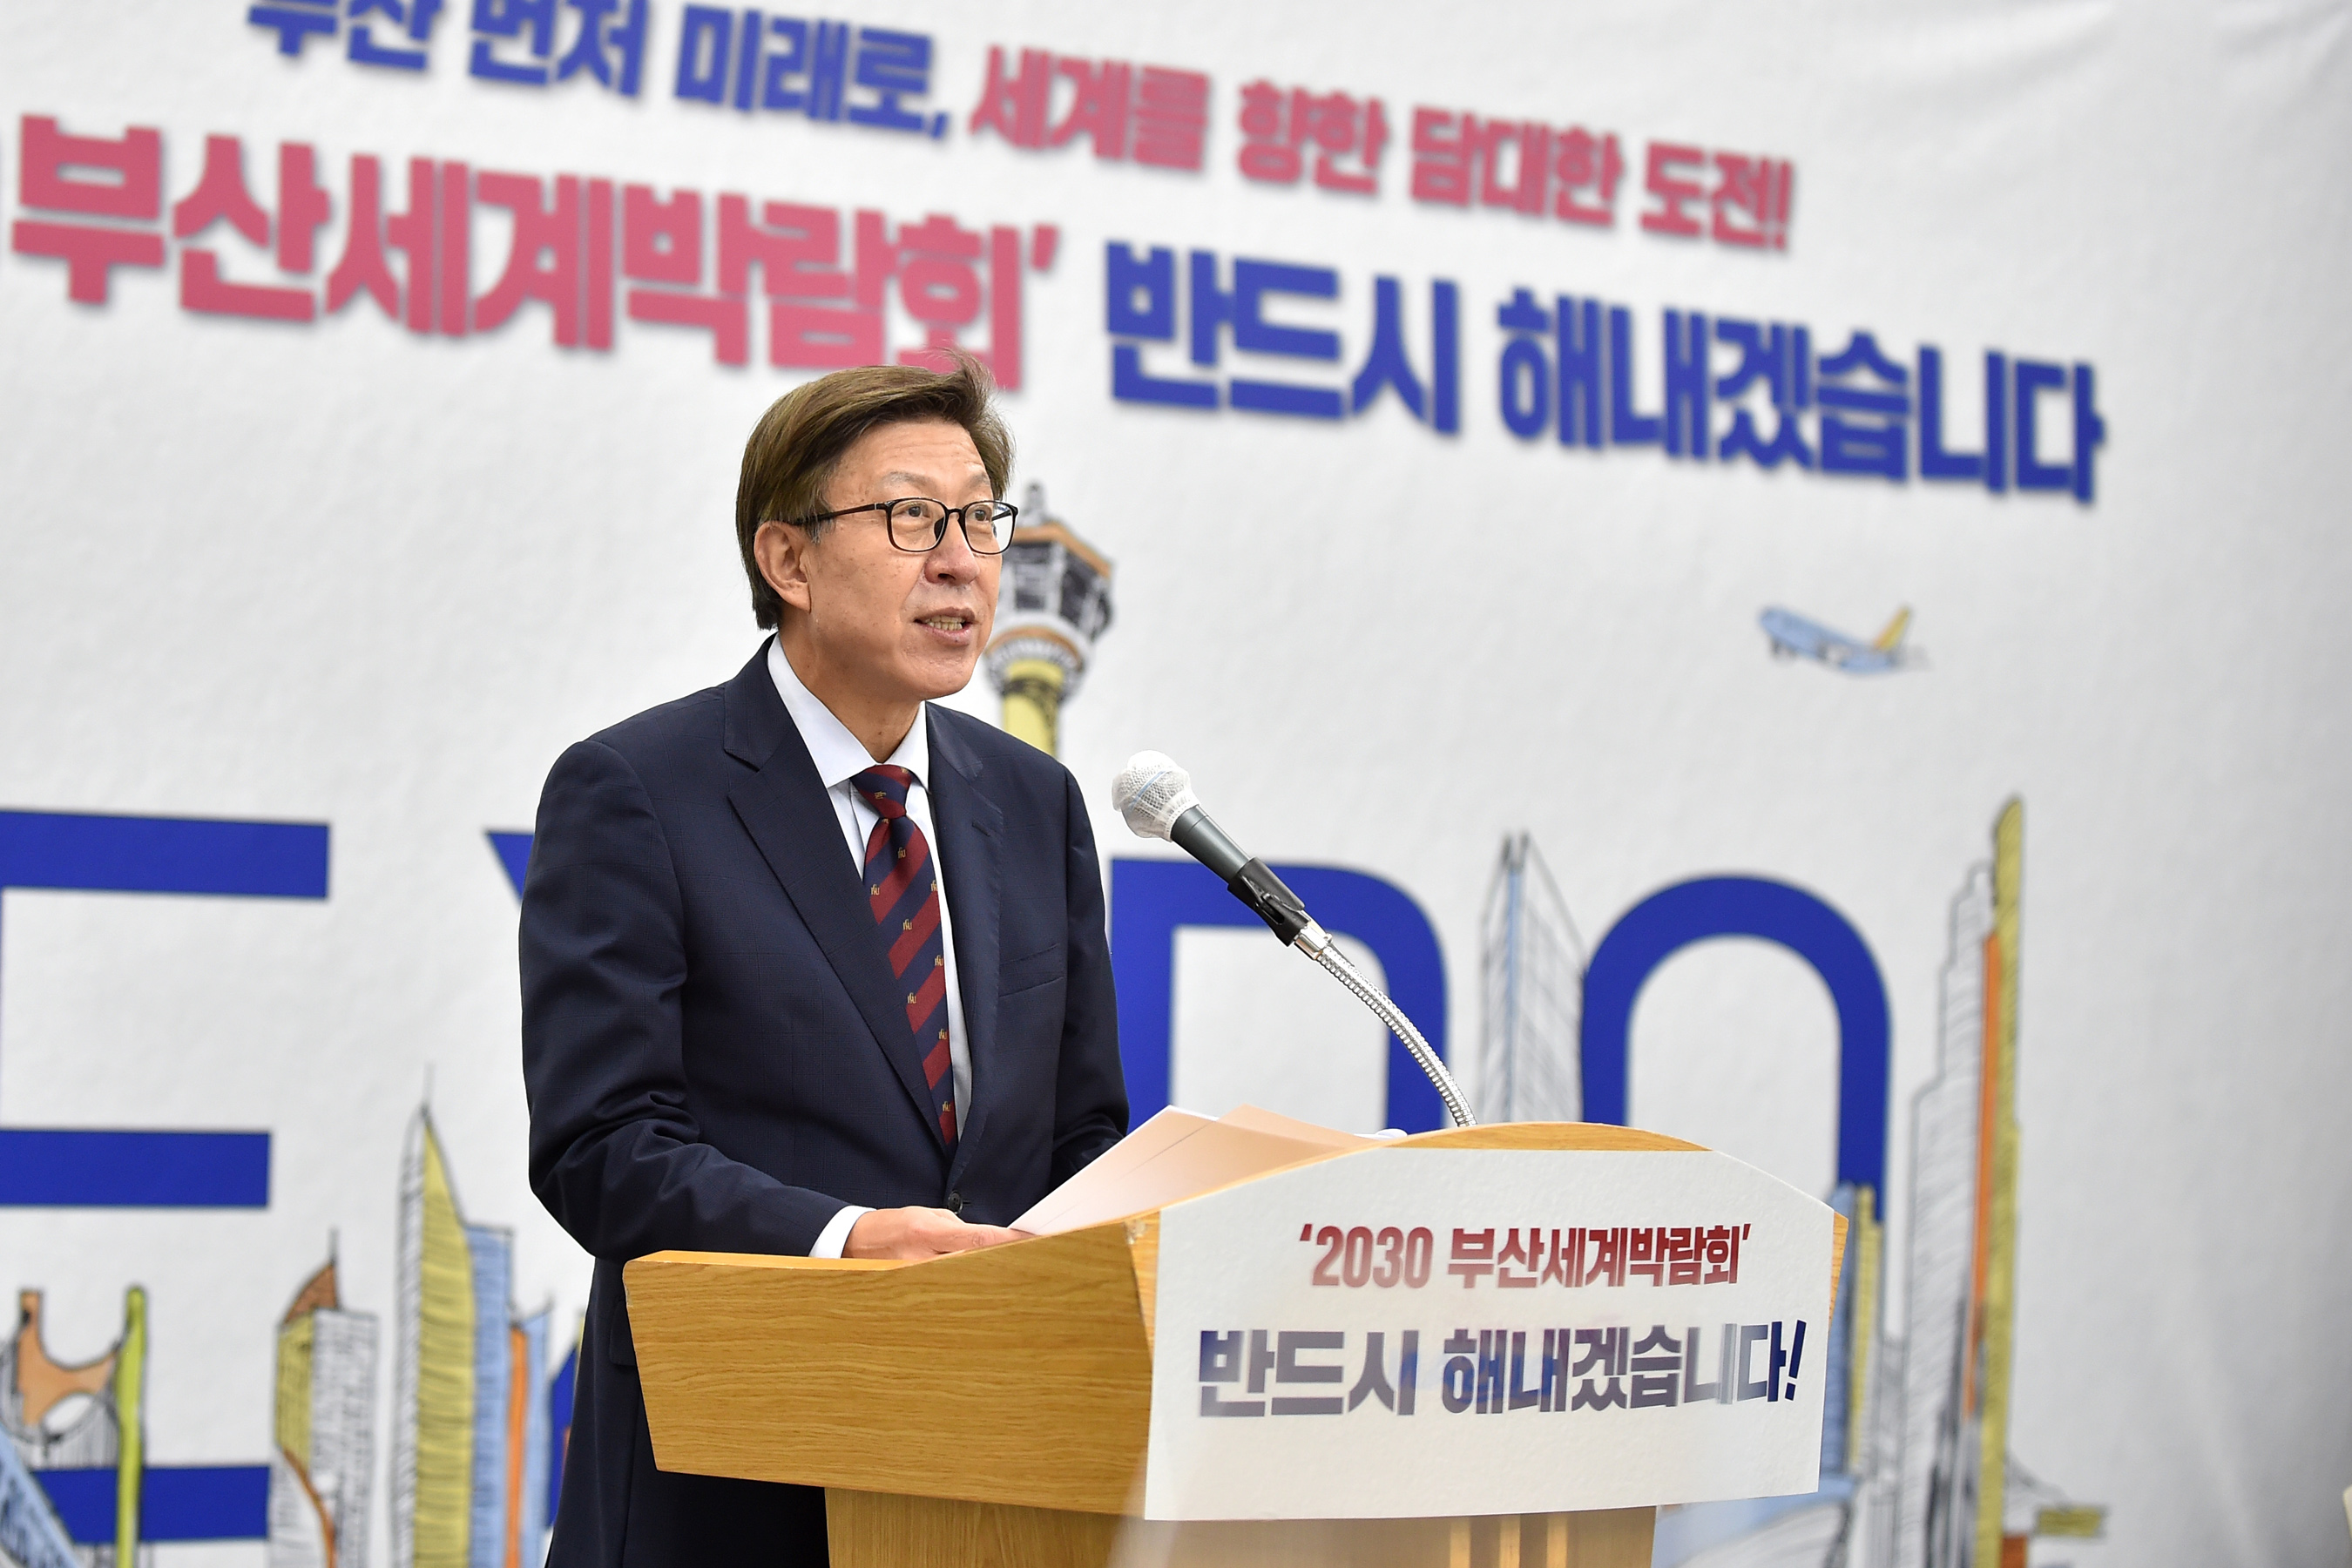 20210628 2030 부산월드엑스포 유치의지 대시민 브리핑(대회의실) 사진3